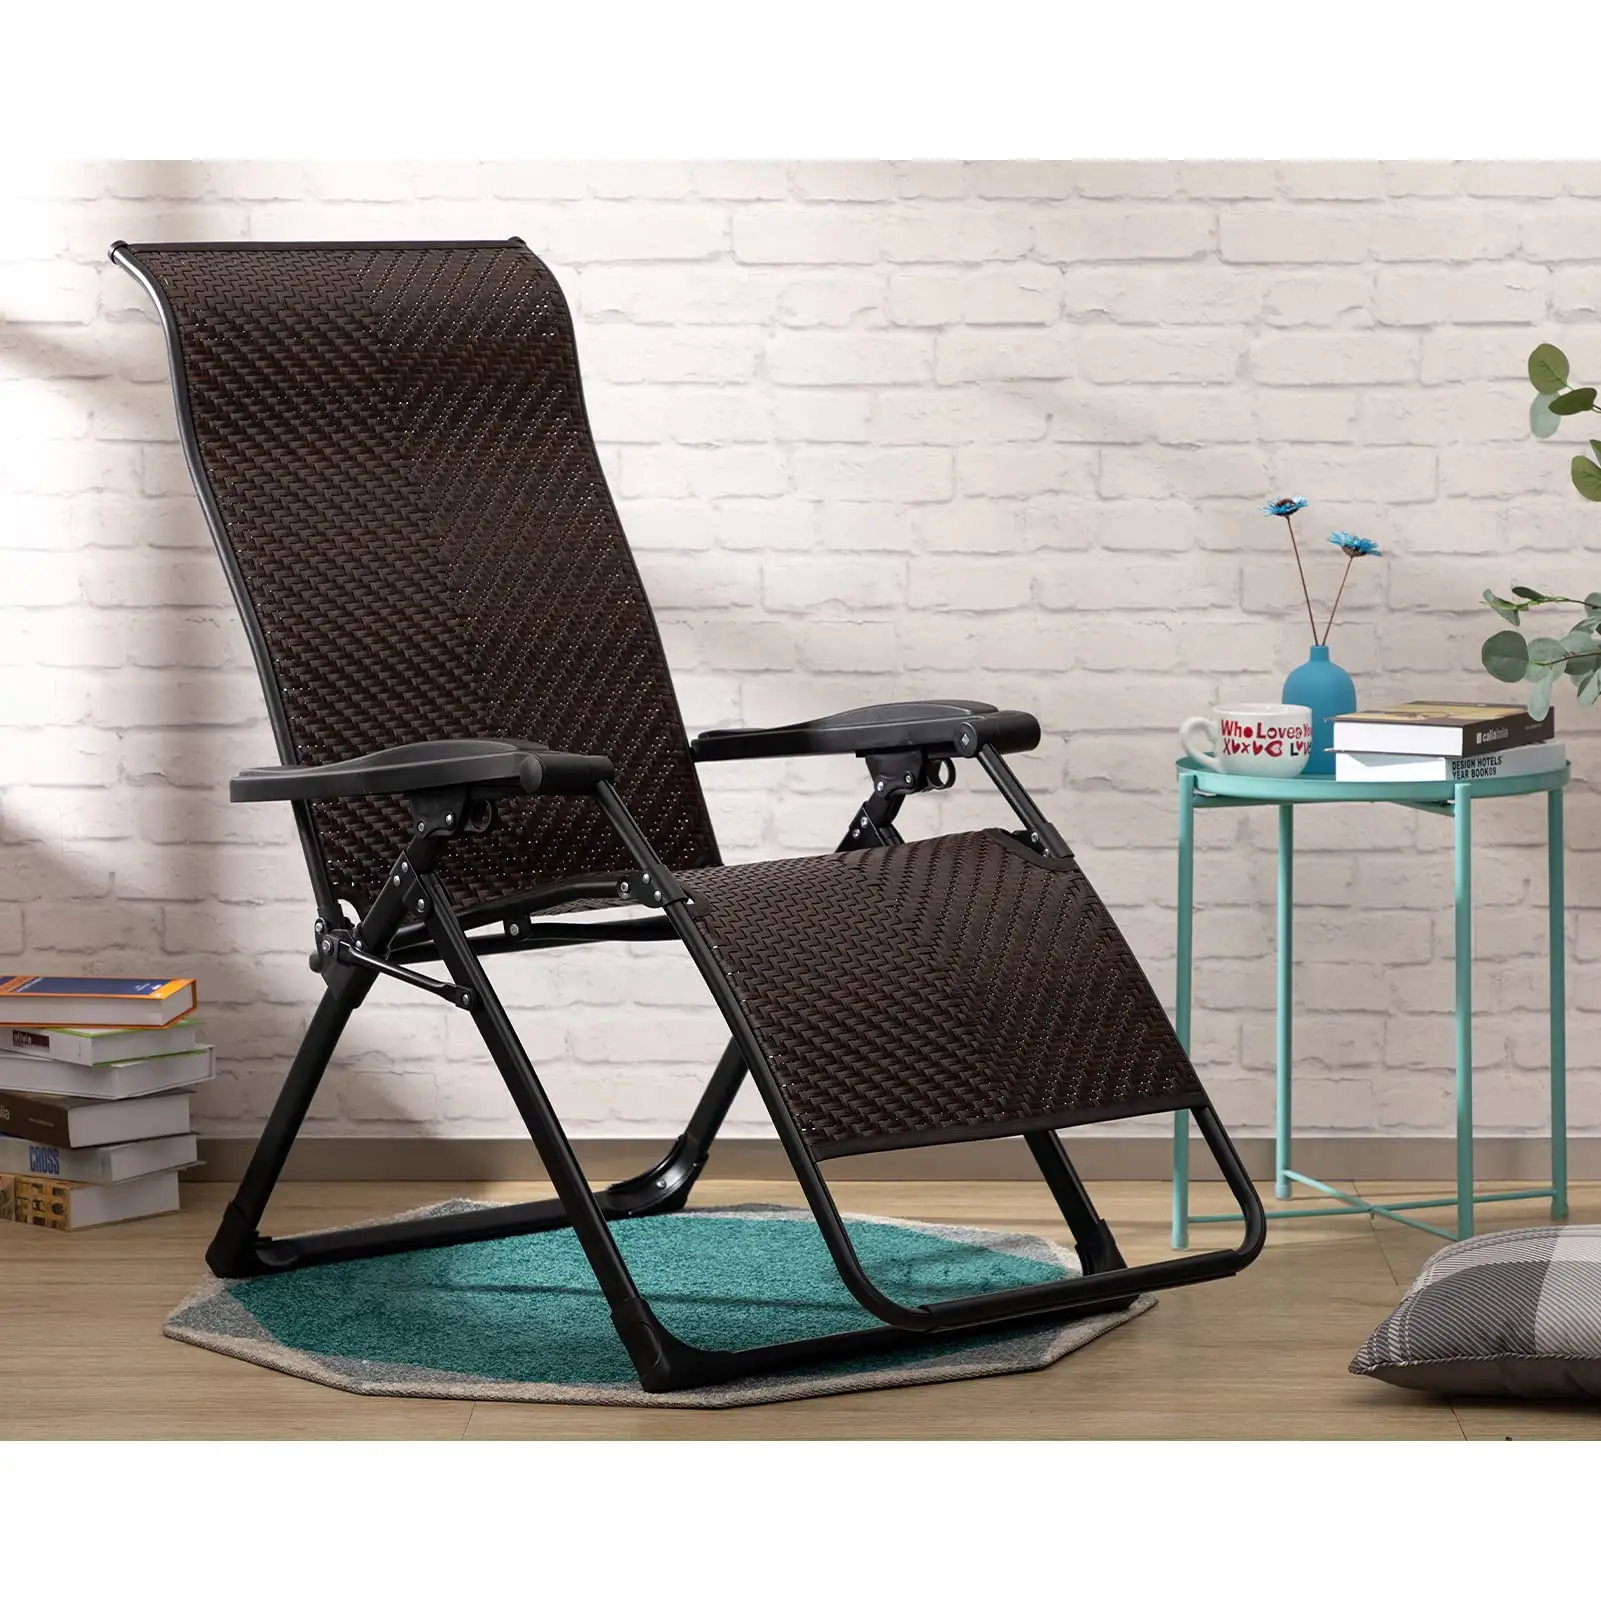 Yetişkinler için kilit ile Modern siyah sıfır yerçekimi sandalye Rattan şezlong şezlong sandalyeler